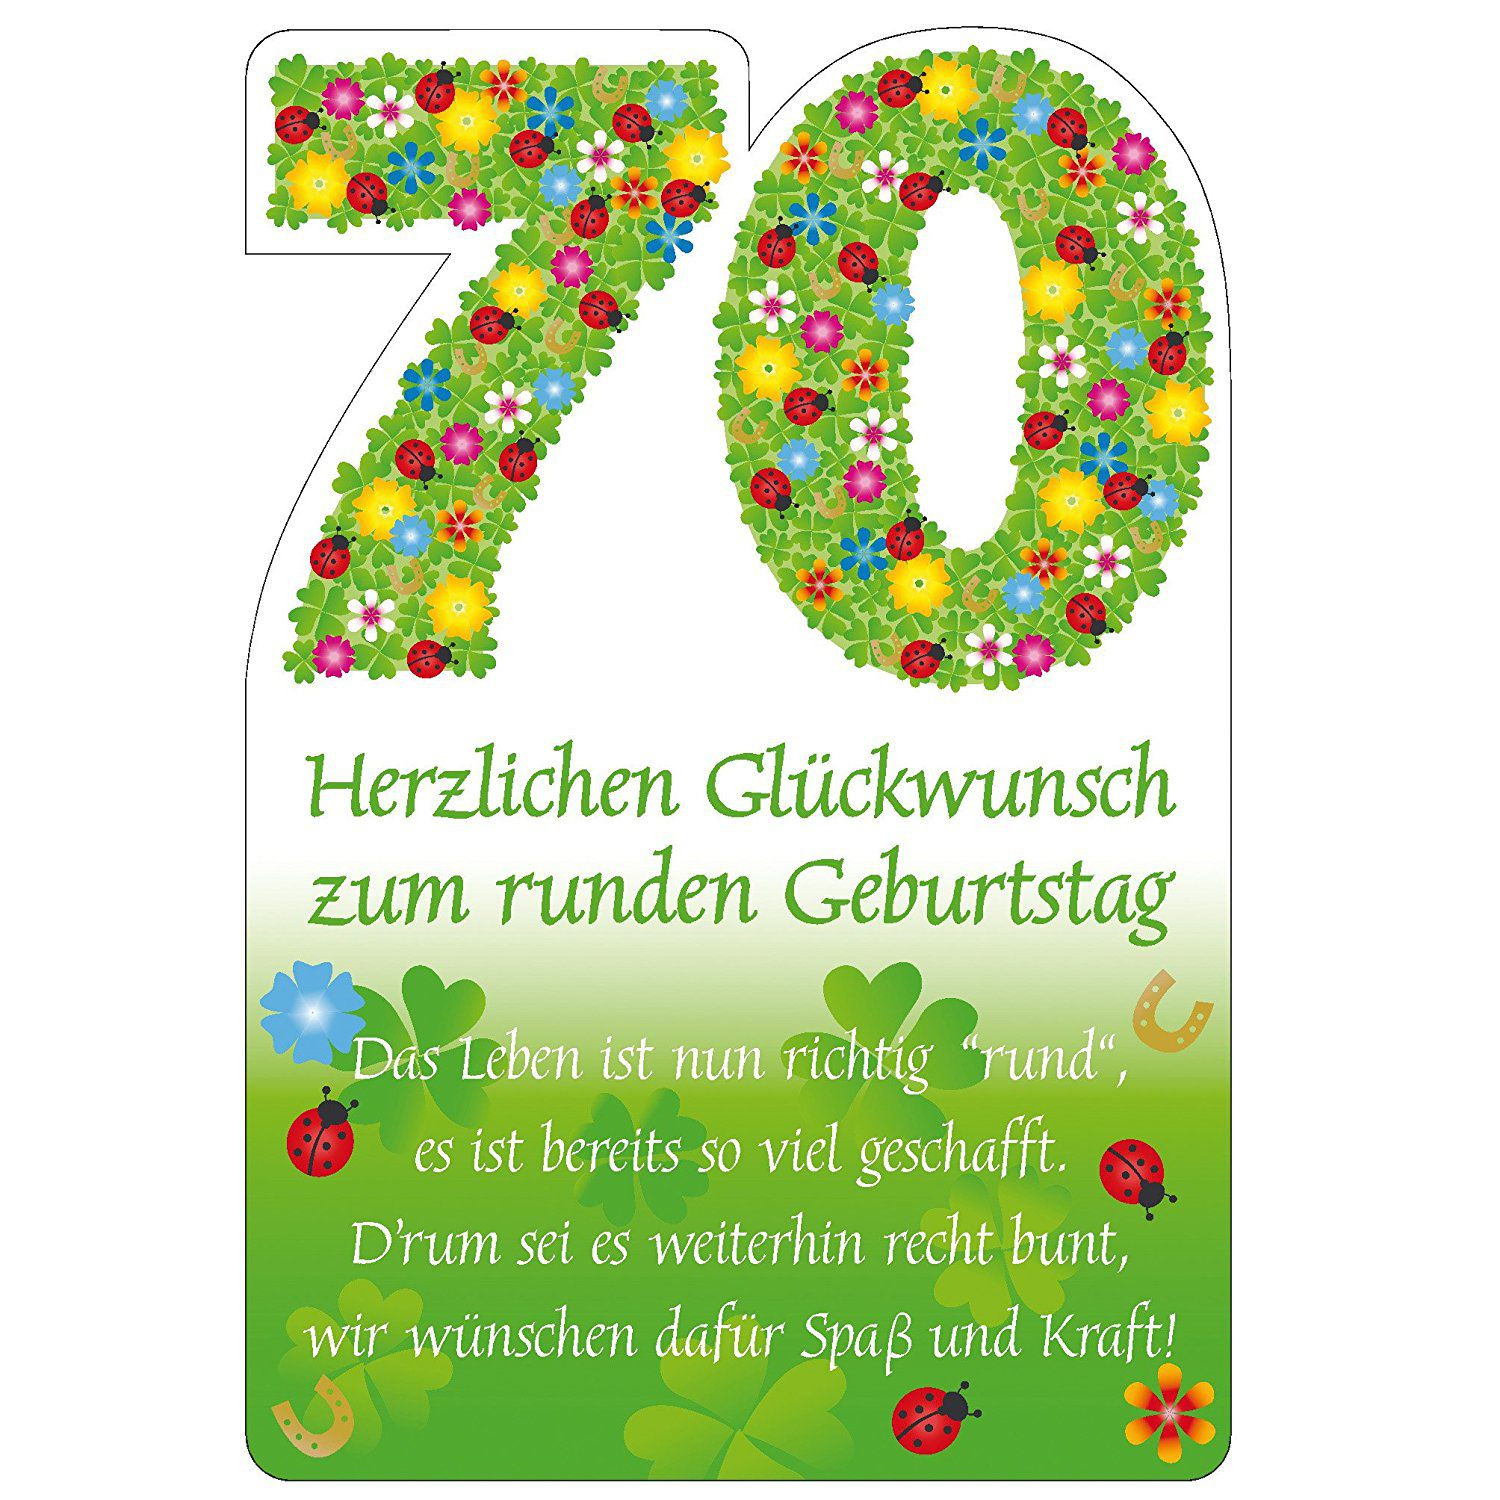 Geburtstagswünsche Zum 70. Geburtstag
 Einladung Zum 70 Geburtstag